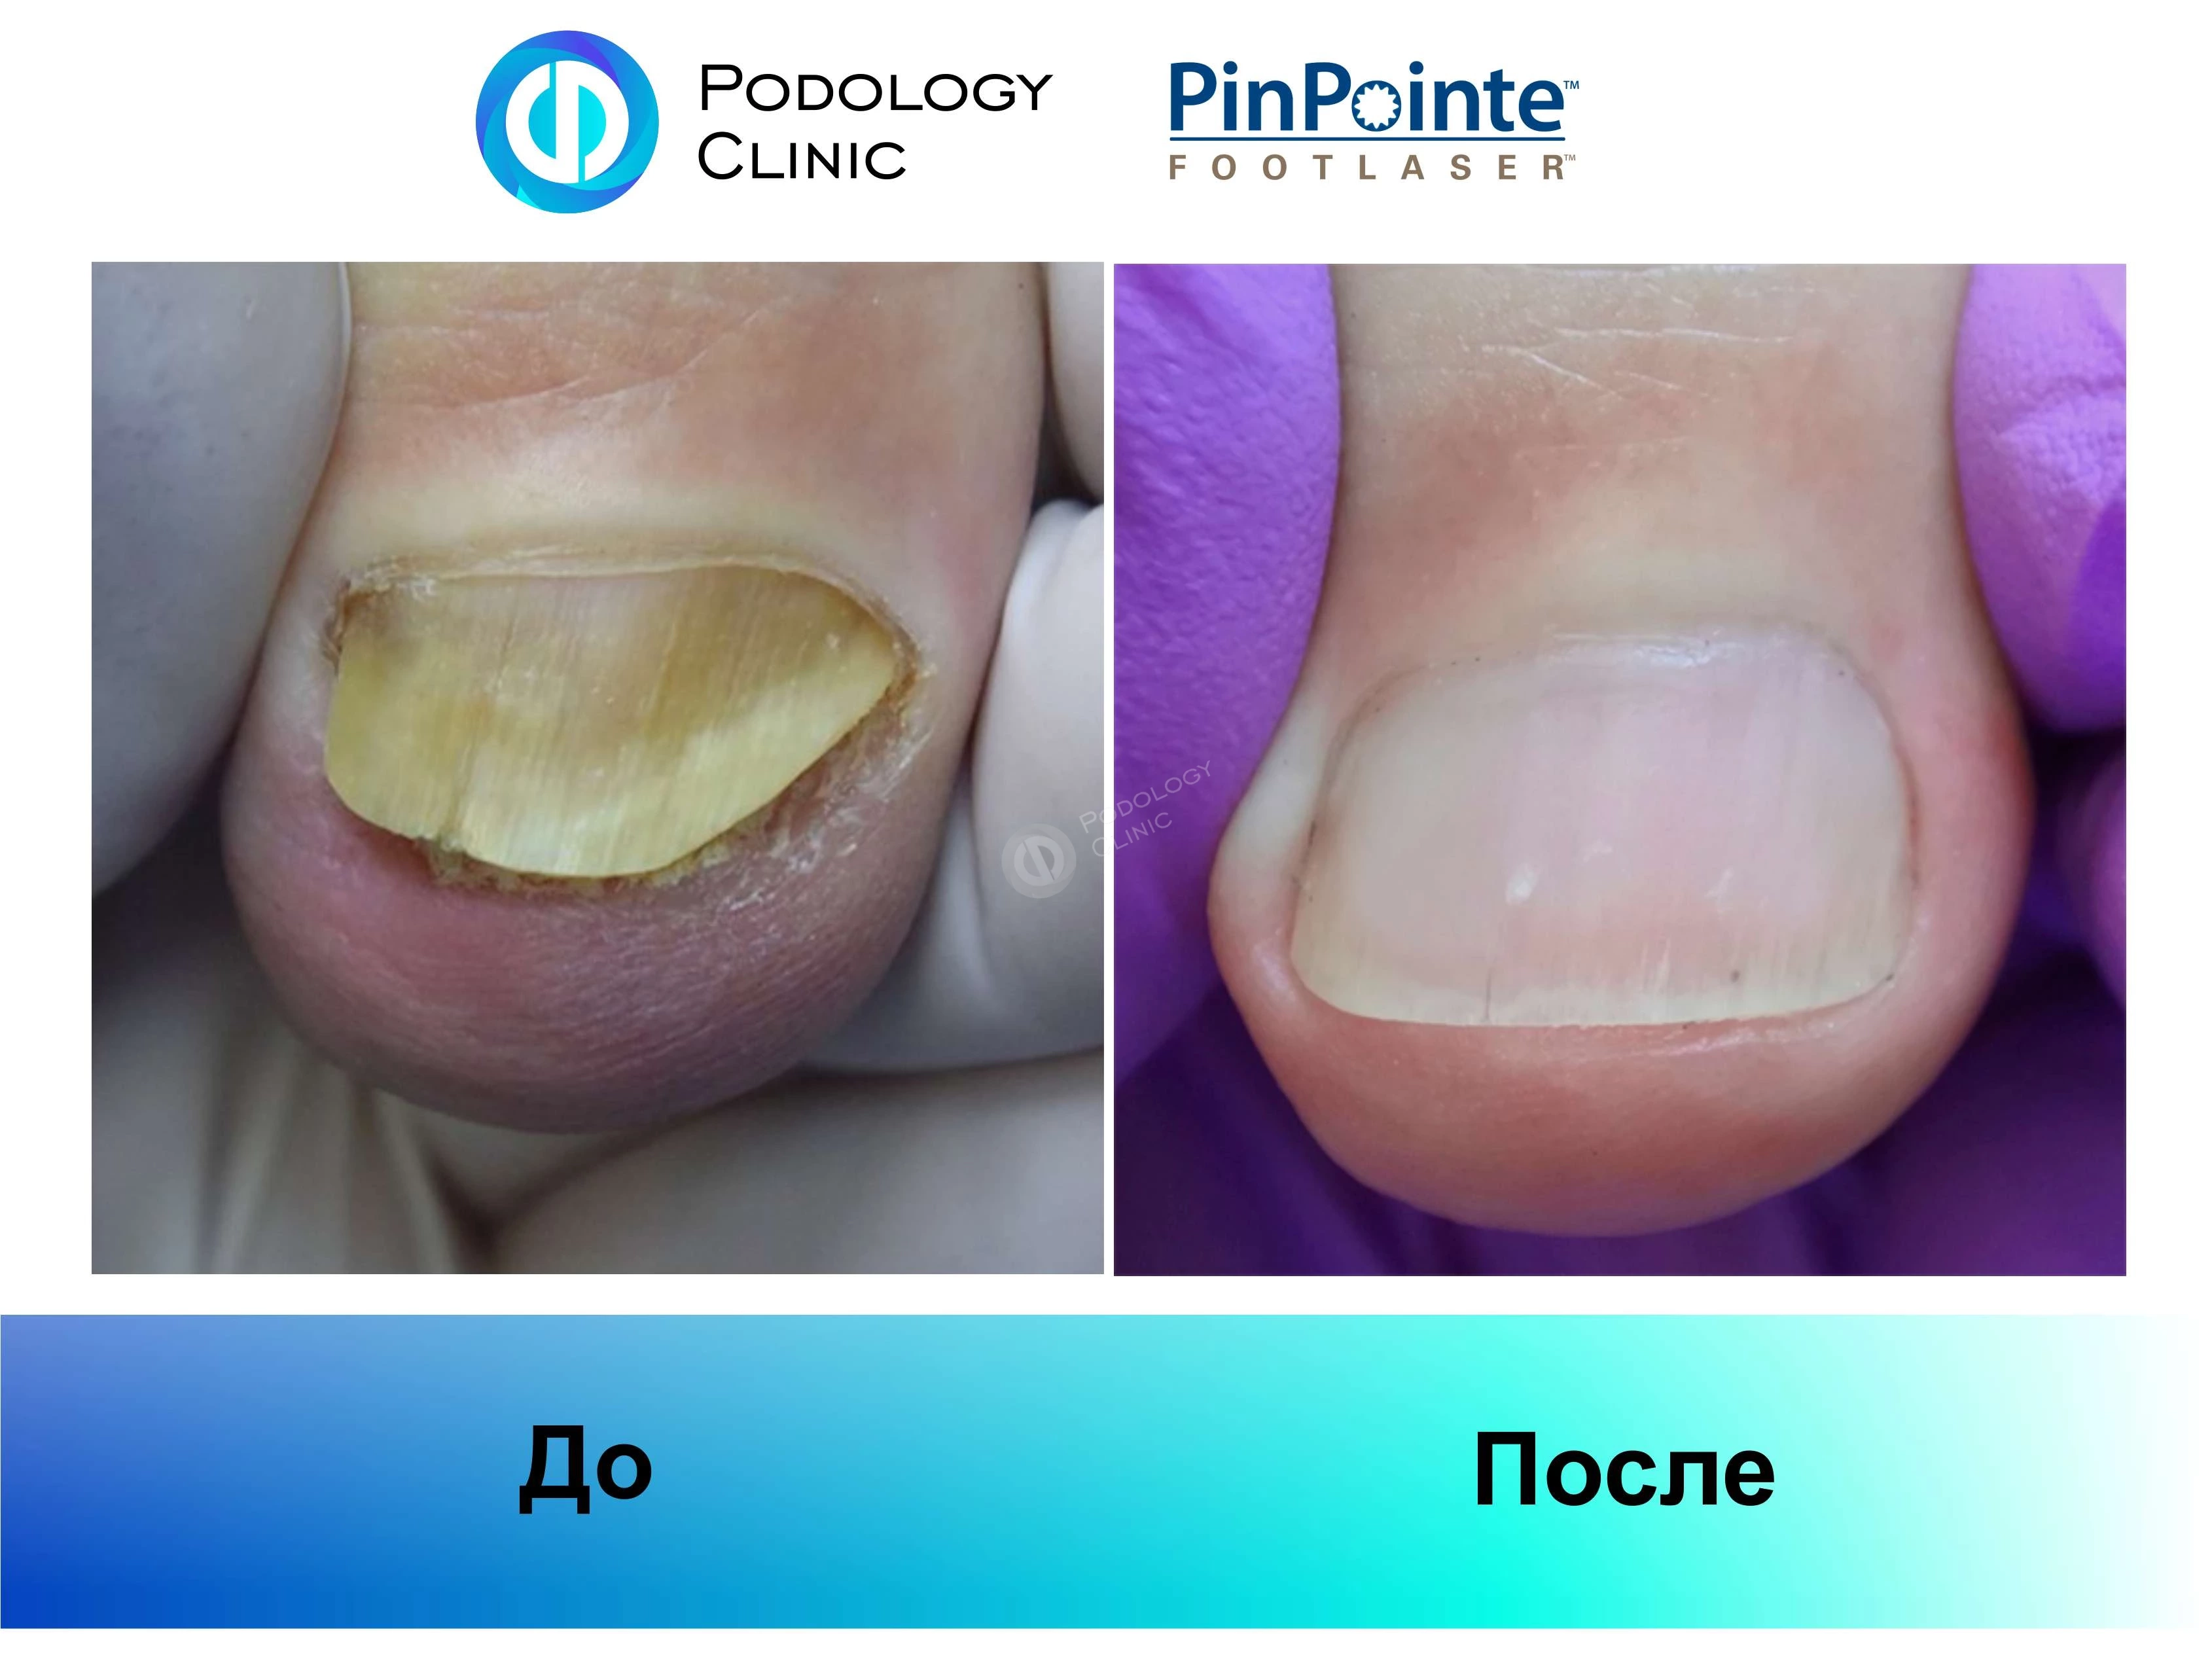 Примеры работы лазера PinPointe FootLaser в лечении онихомикоза, фото 1